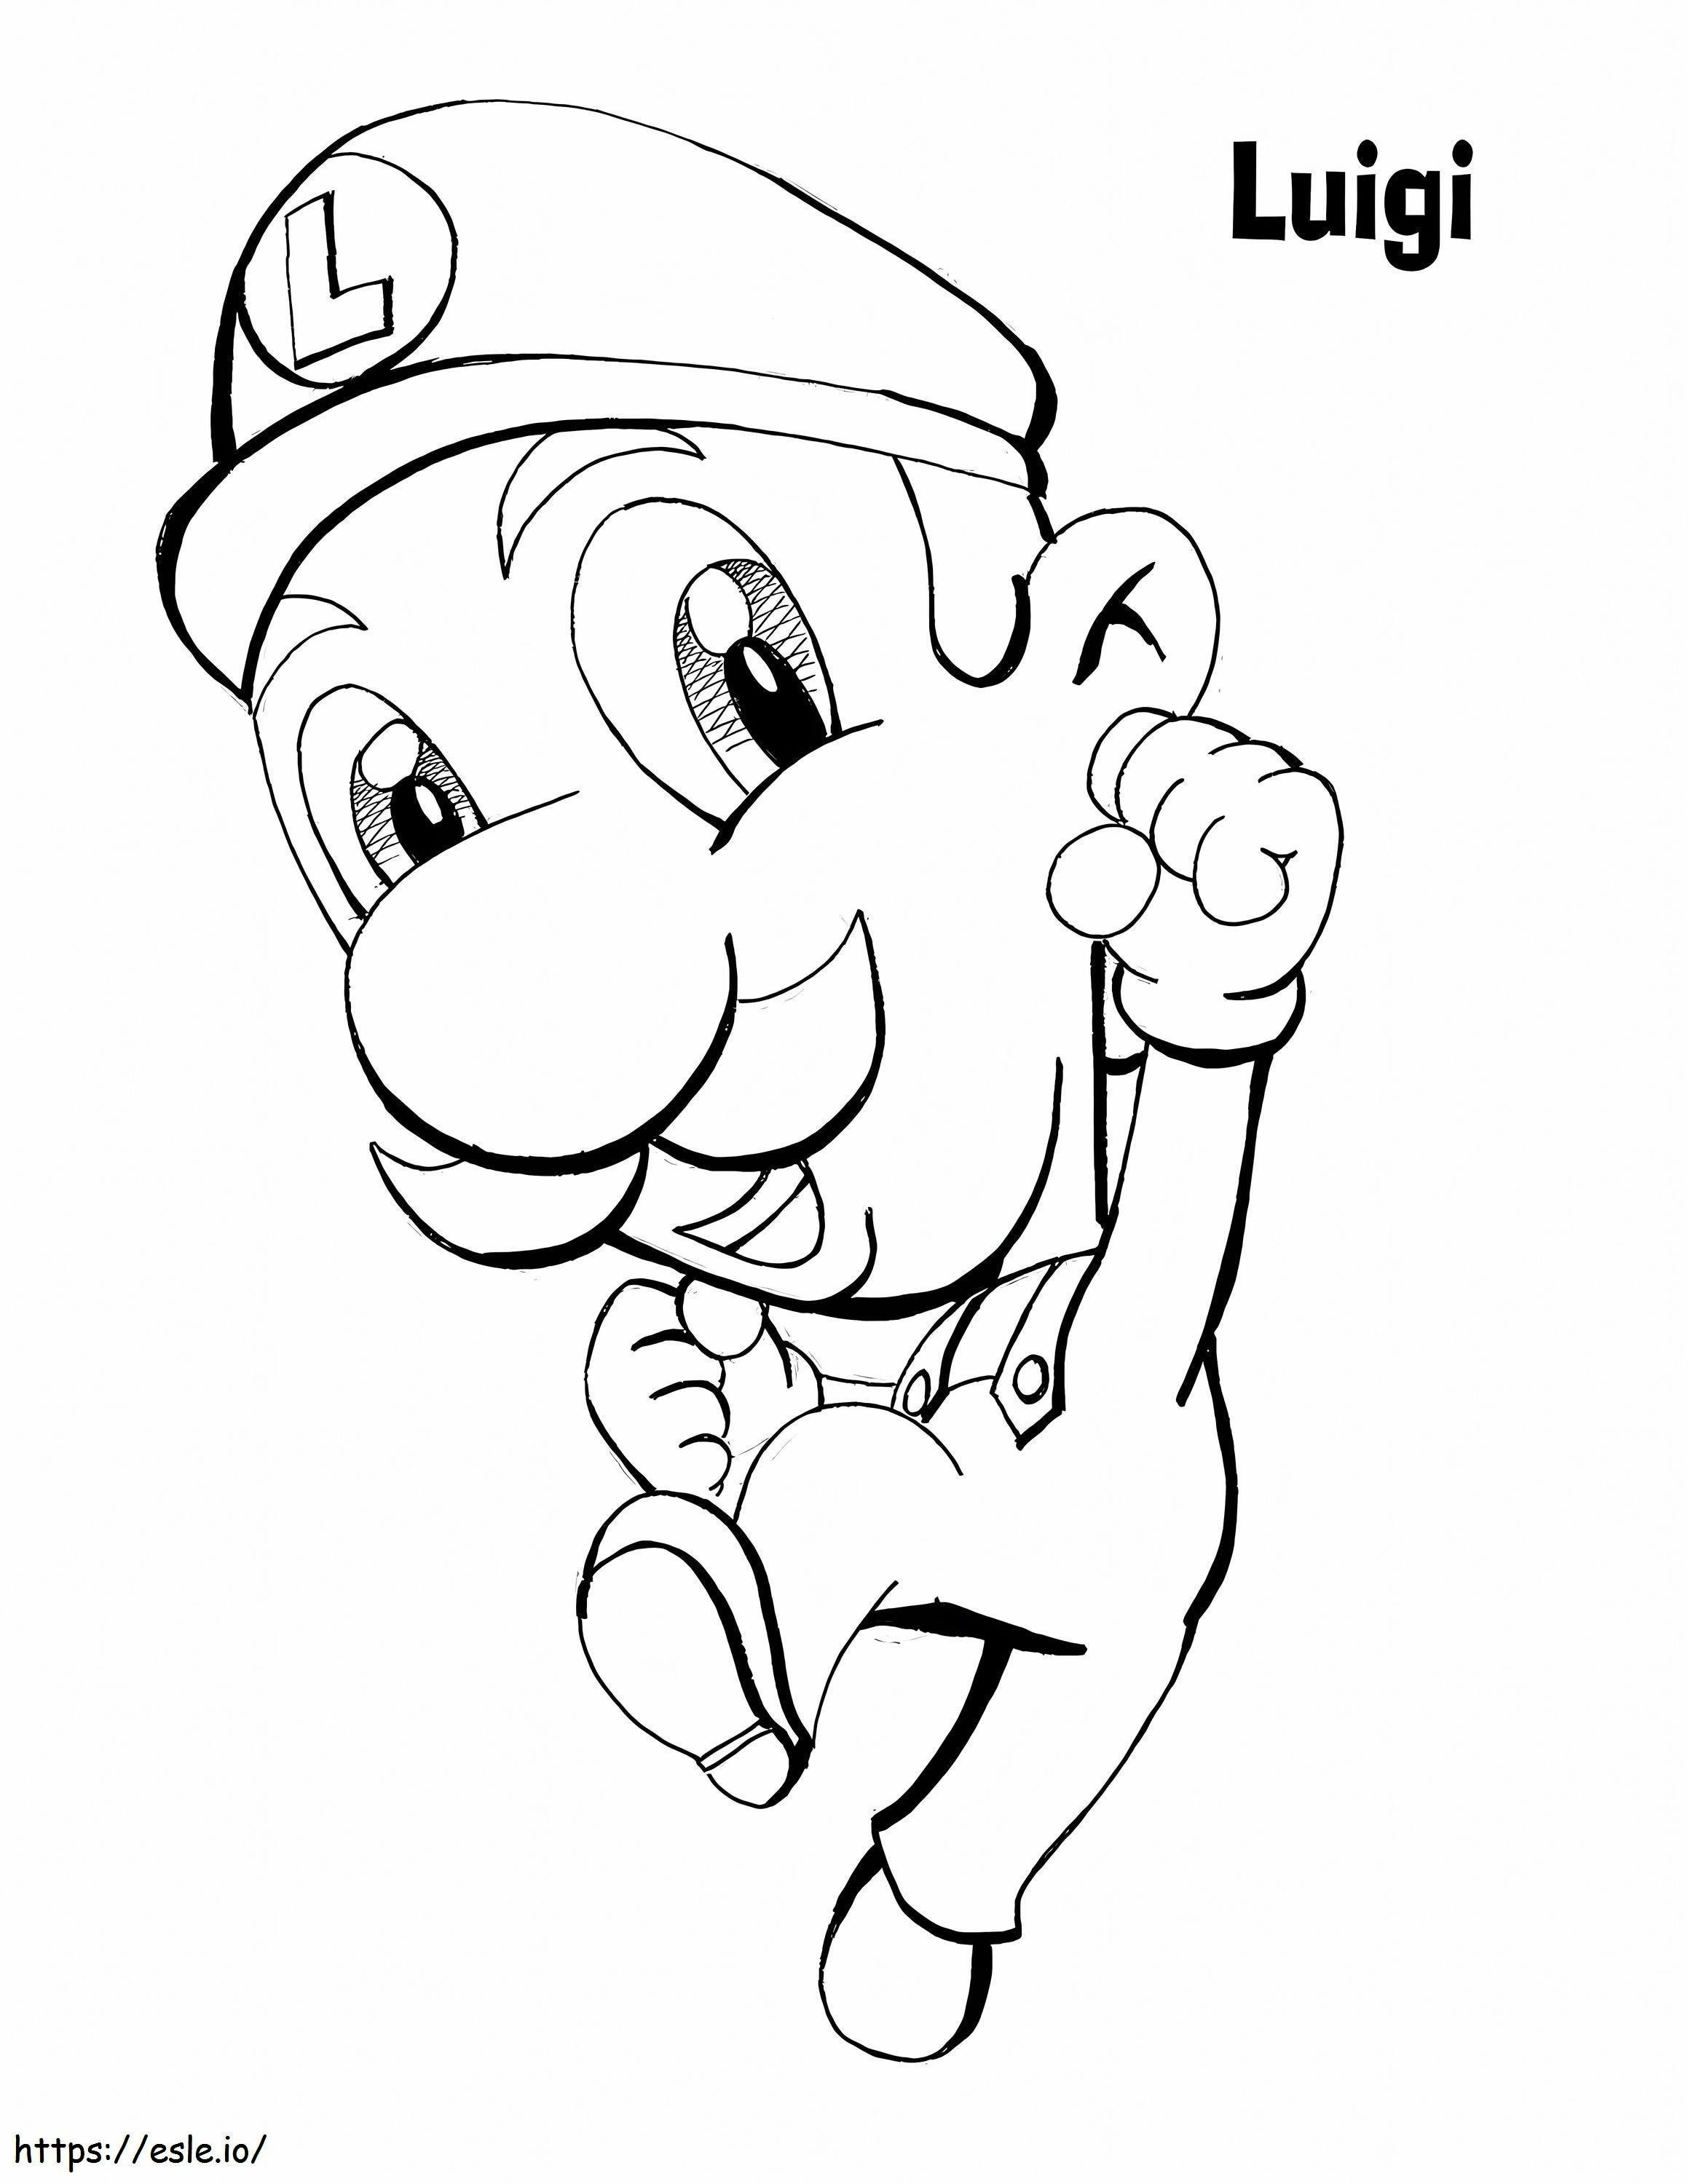 Luigi divertido pulando para colorir